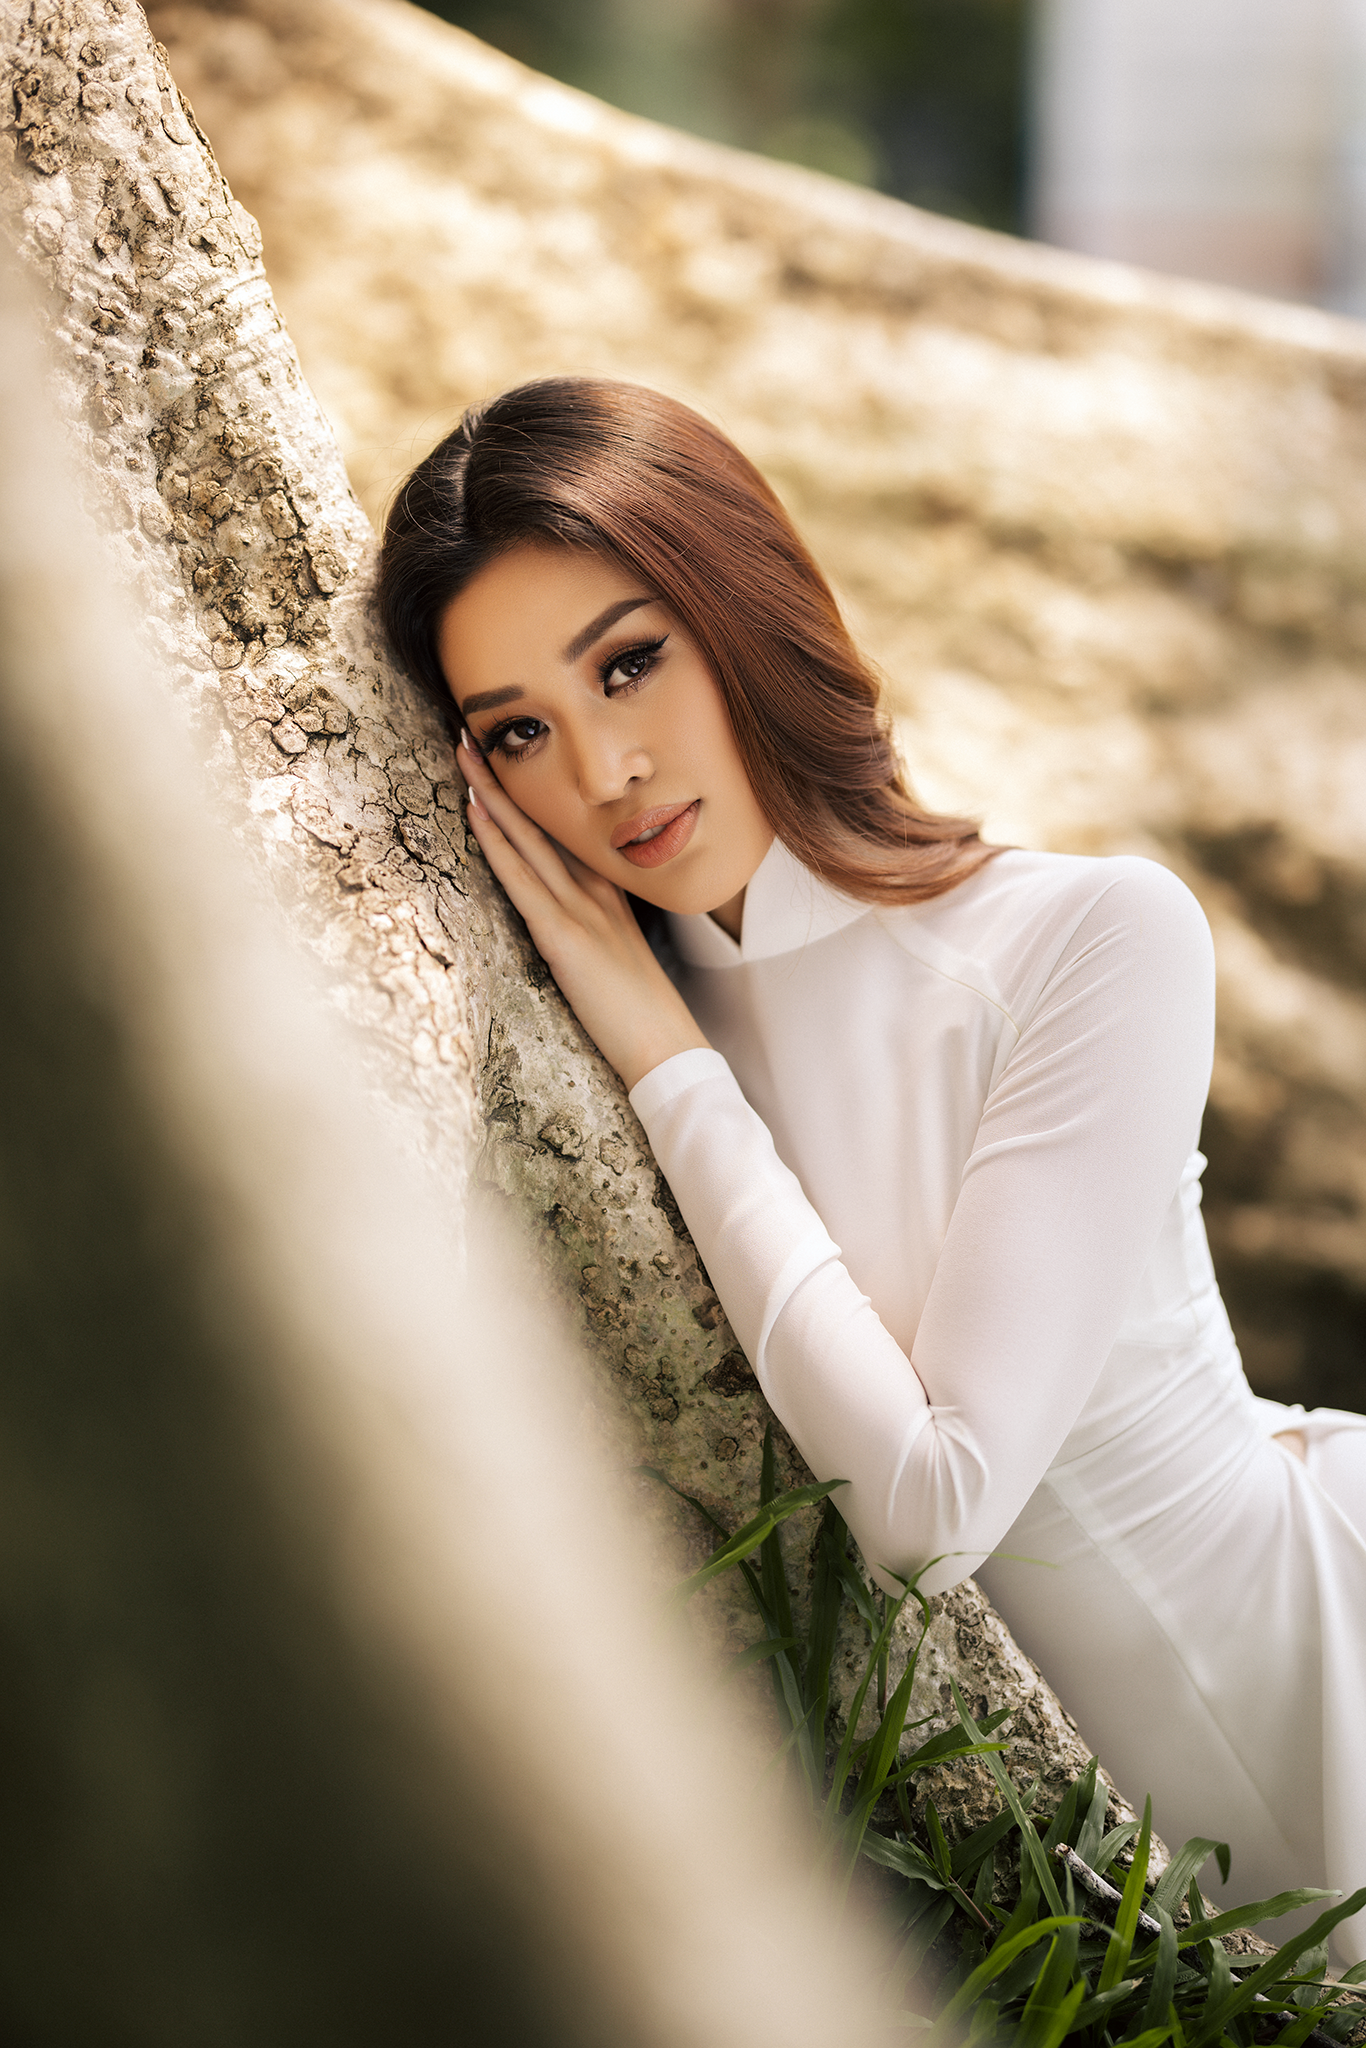 Hoa hậu Khánh Vân mặc áo dài trắng đẹp như mỹ nhân trong tranh - Ảnh 8.